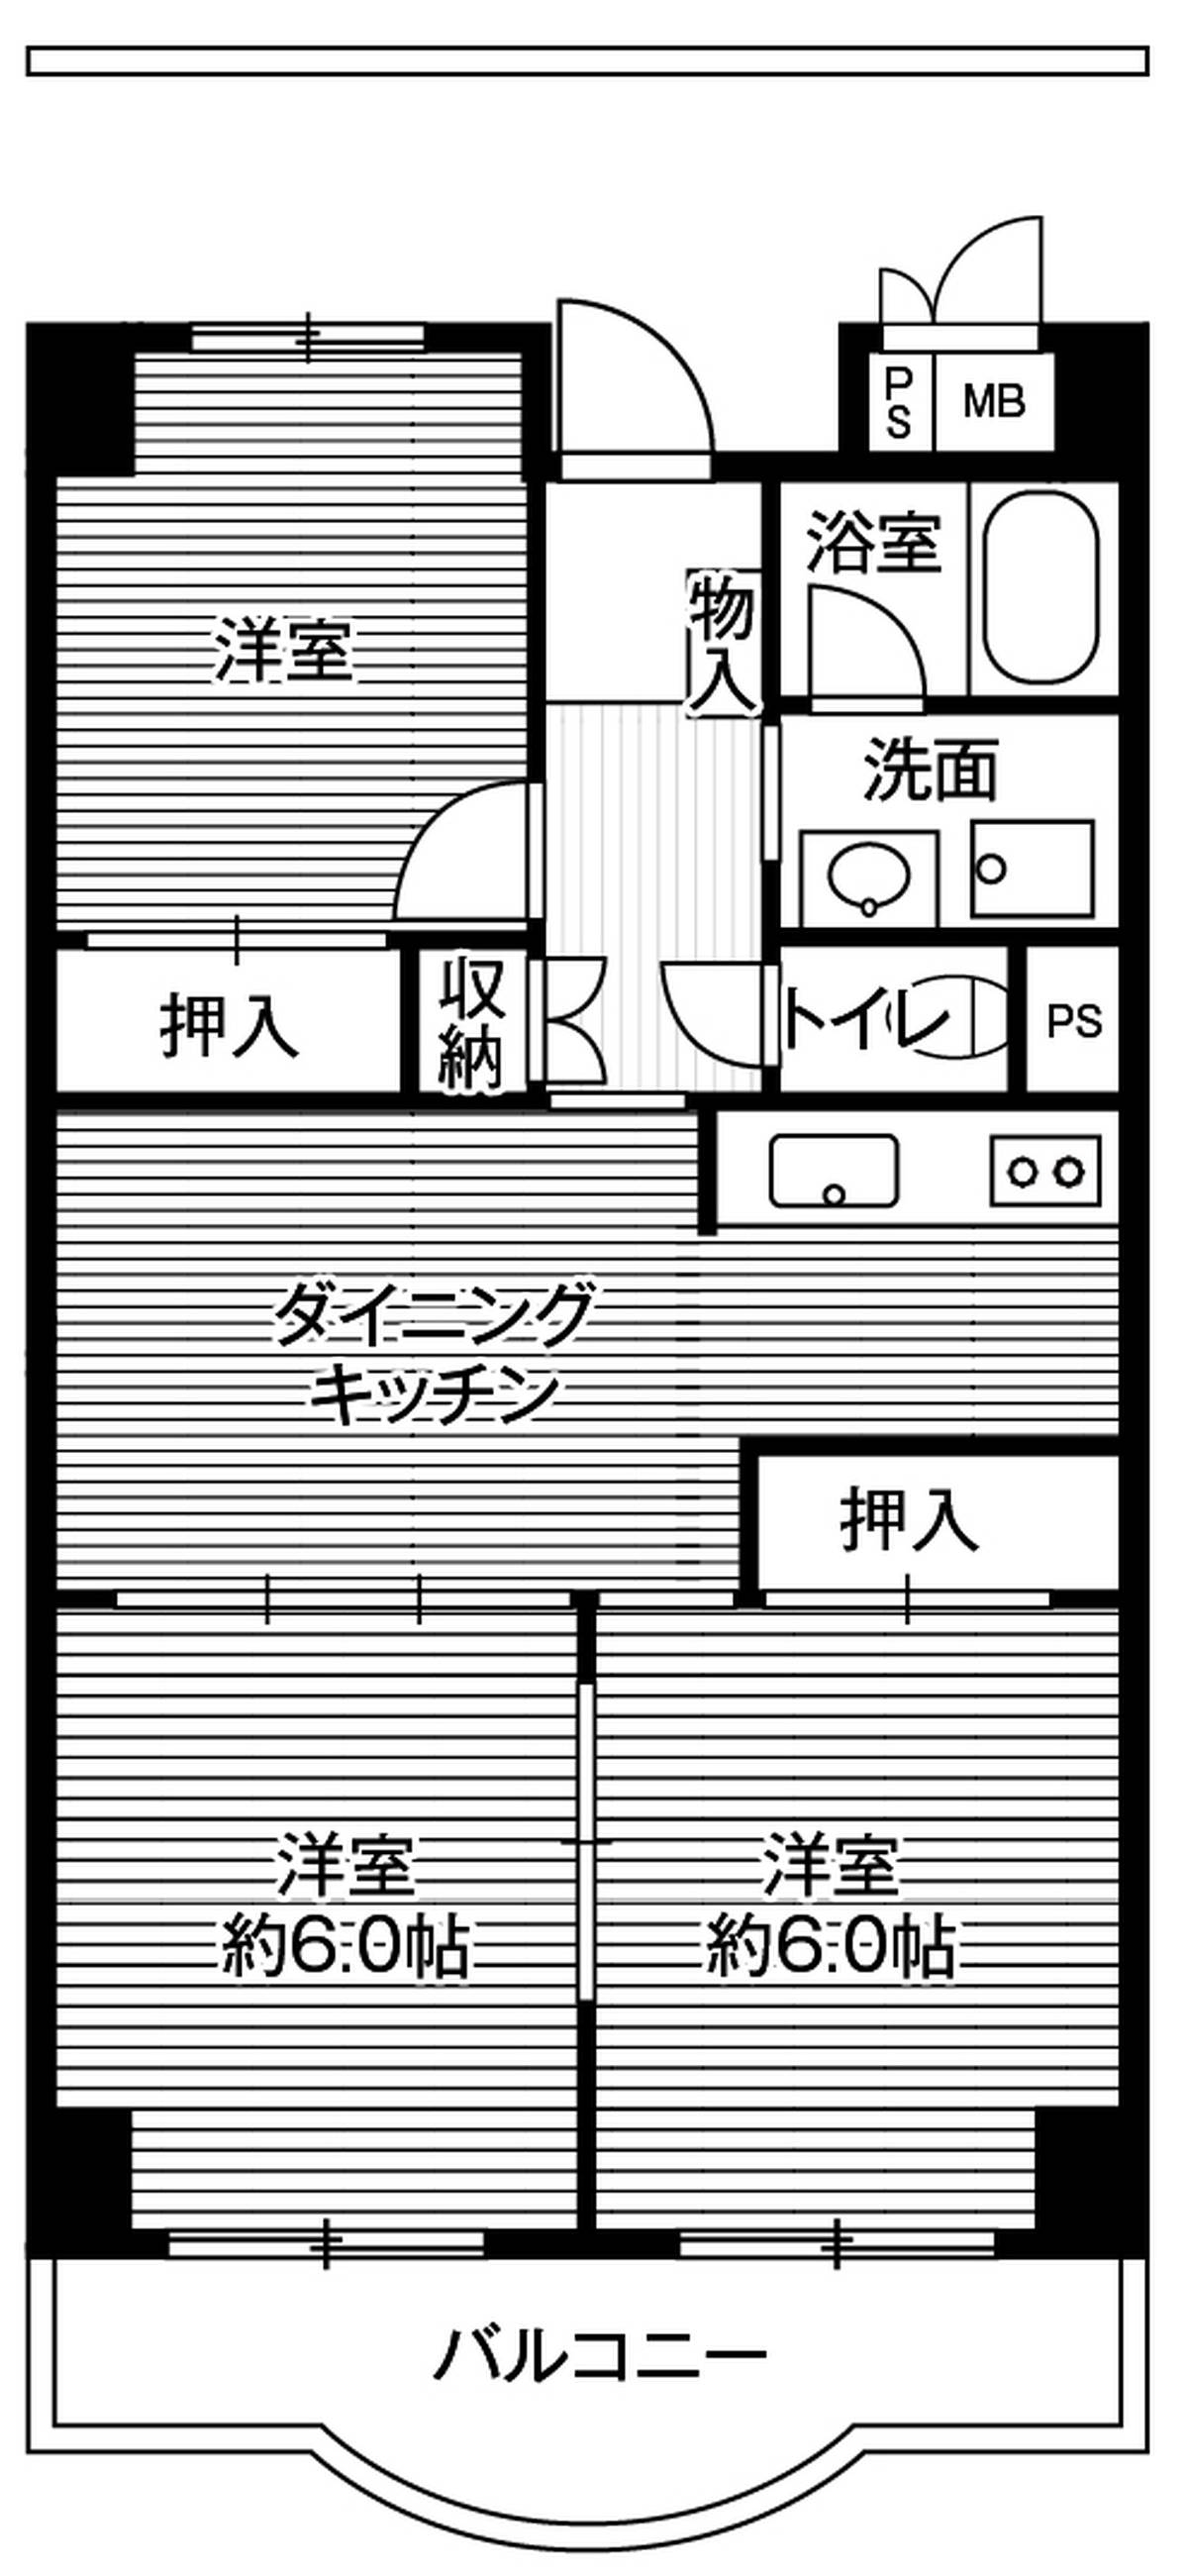 Sơ đồ phòng 3DK của Village House Shibaura Tower ở Minato-ku